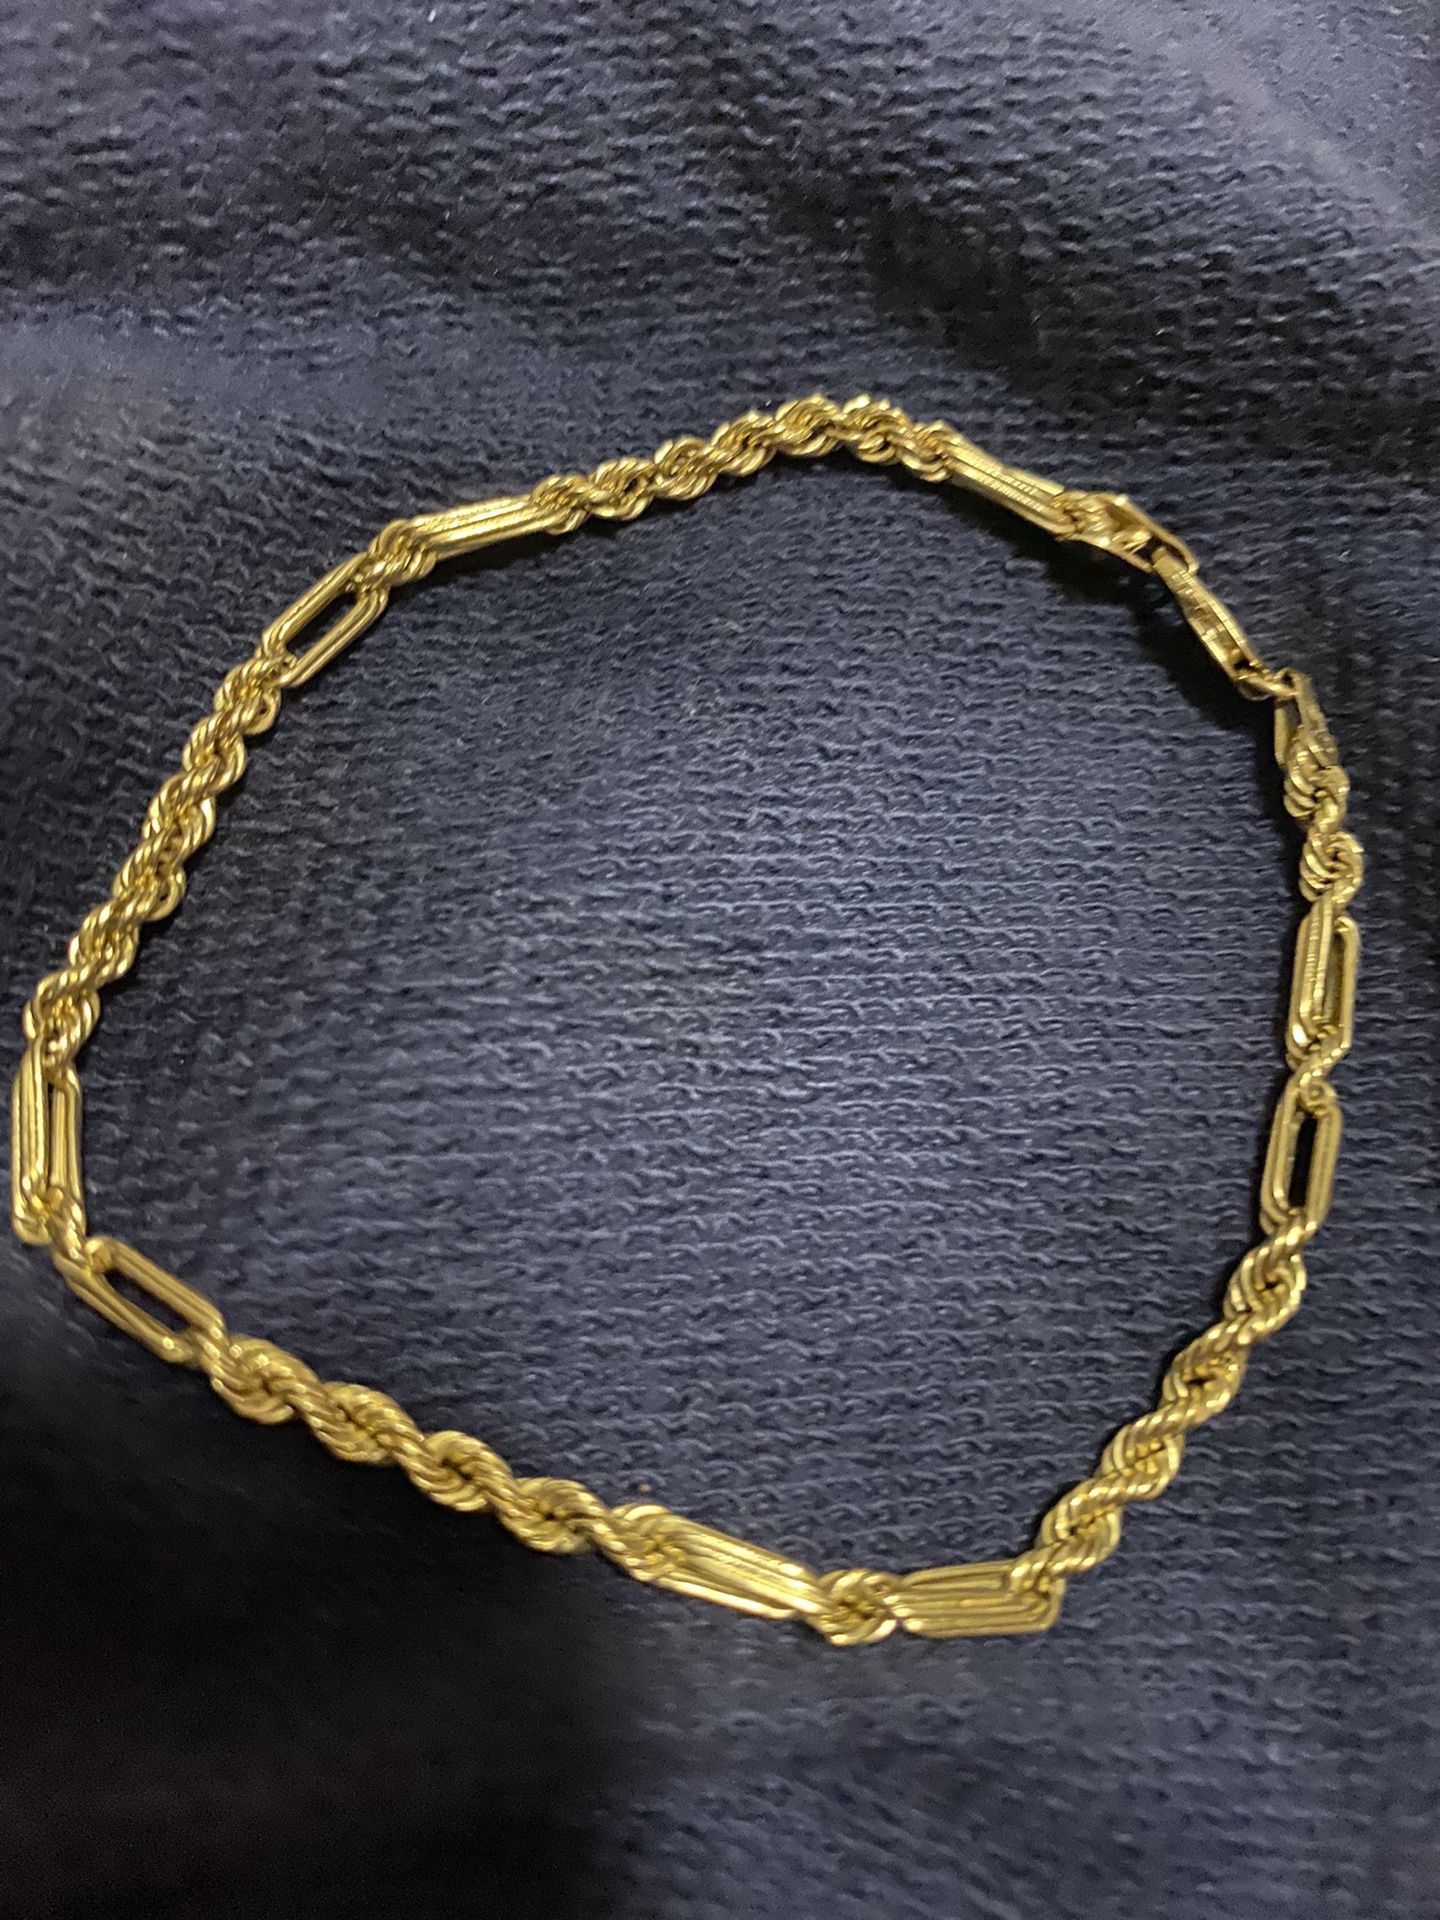 14k bracelet real gold